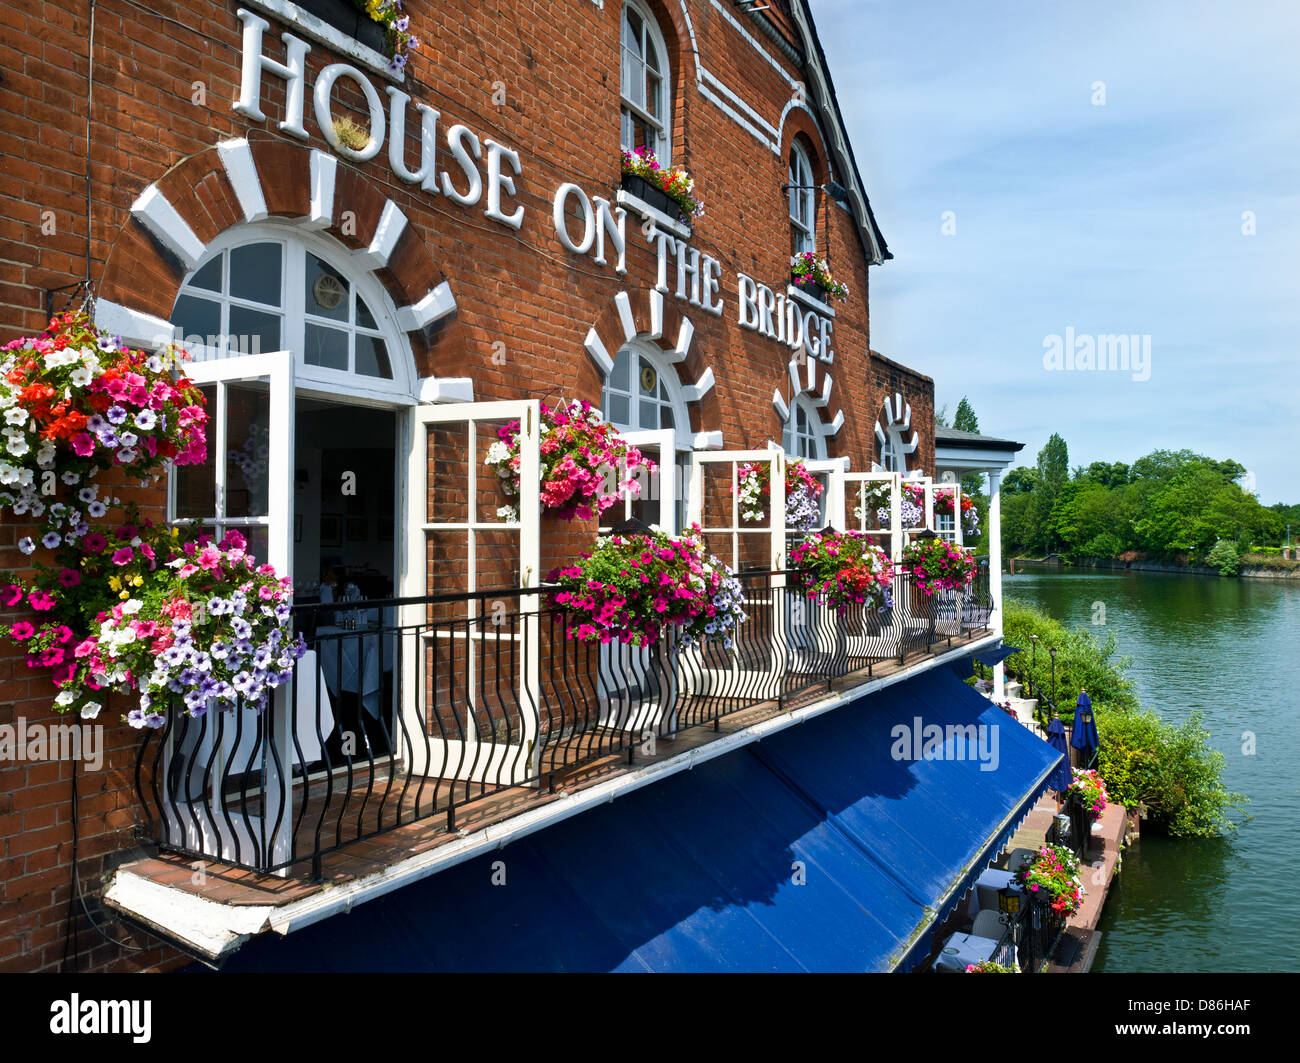 House on the Bridge Restaurant with spring flower baskets from Windsor Bridge over River Thames Eton,Berkshire UK Stock Photo